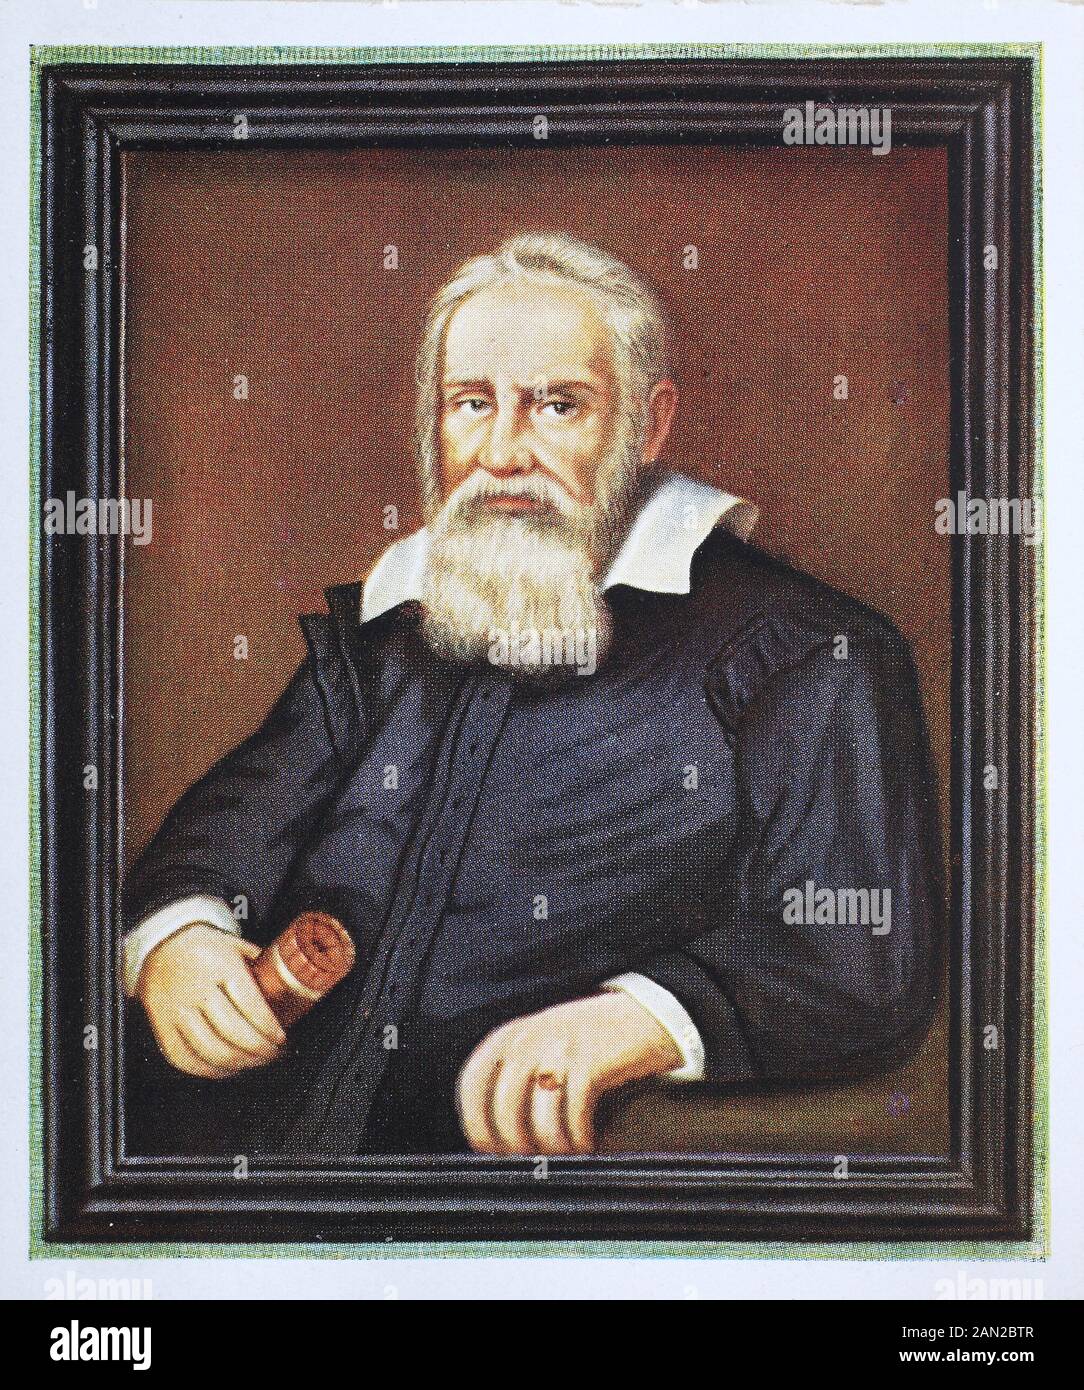 Galileo Galilei Del 15 De Febrero De 1564 Al 8 De Enero De 1642 Fue Un Polideo Italiano Galileo Galilei 15 Febrero 1564 8 Januar 1642 War Ein Italienischer Polymath